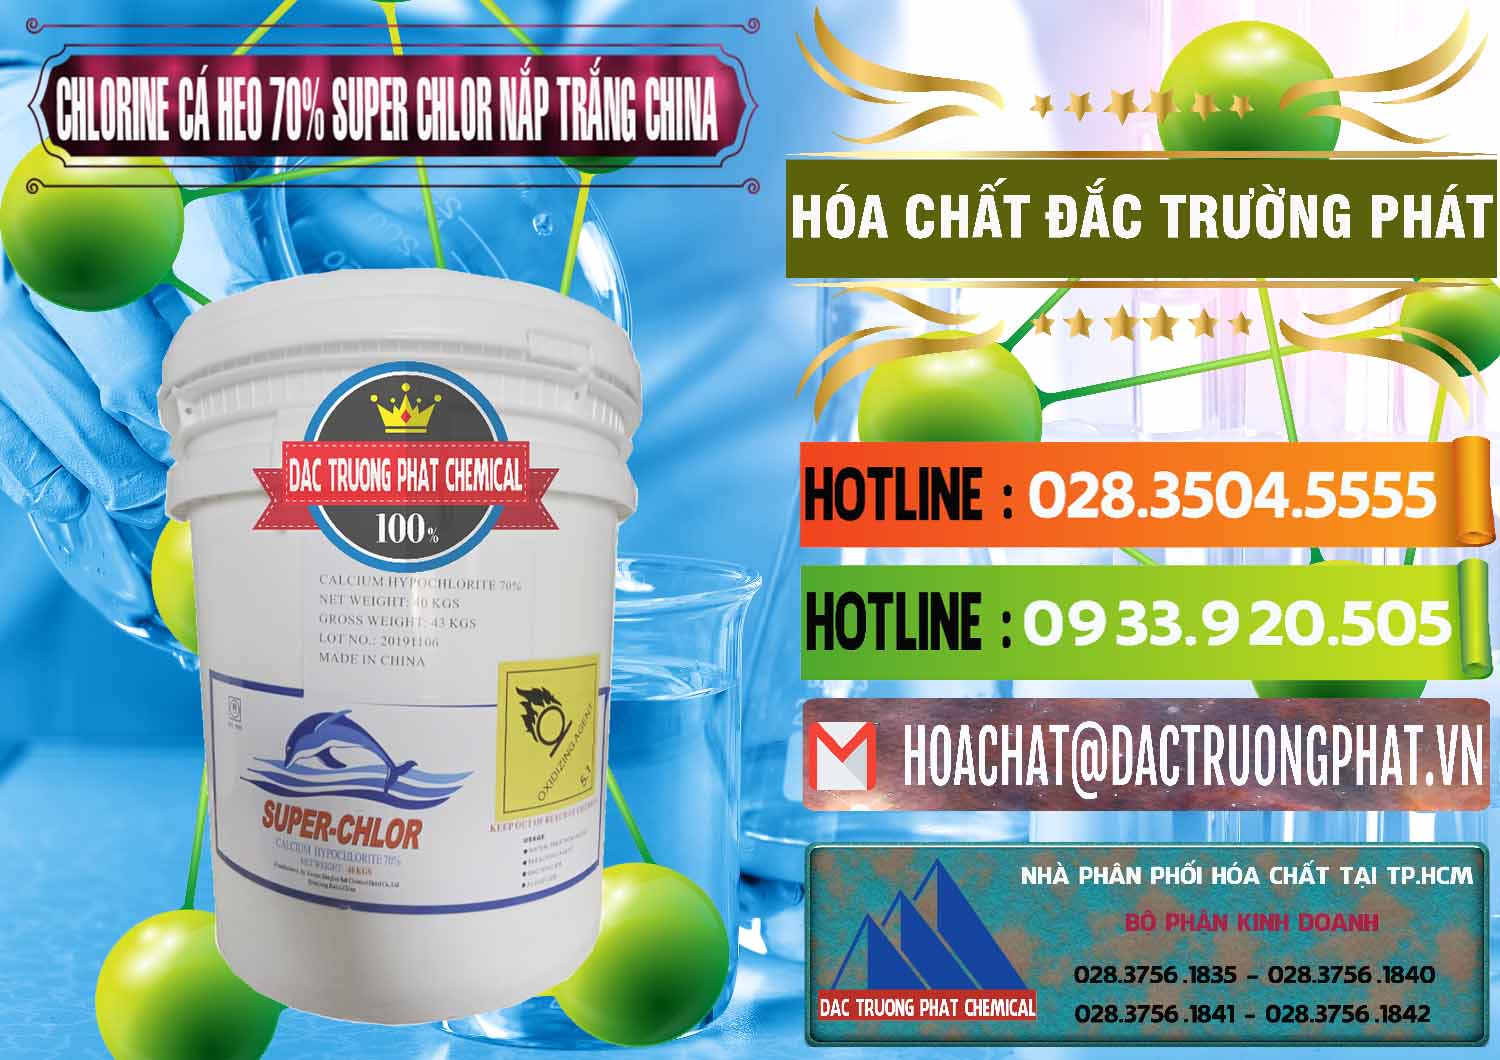 Nơi phân phối & bán Clorin - Chlorine Cá Heo 70% Super Chlor Nắp Trắng Trung Quốc China - 0240 - Đơn vị chuyên nhập khẩu ( phân phối ) hóa chất tại TP.HCM - cungcaphoachat.com.vn